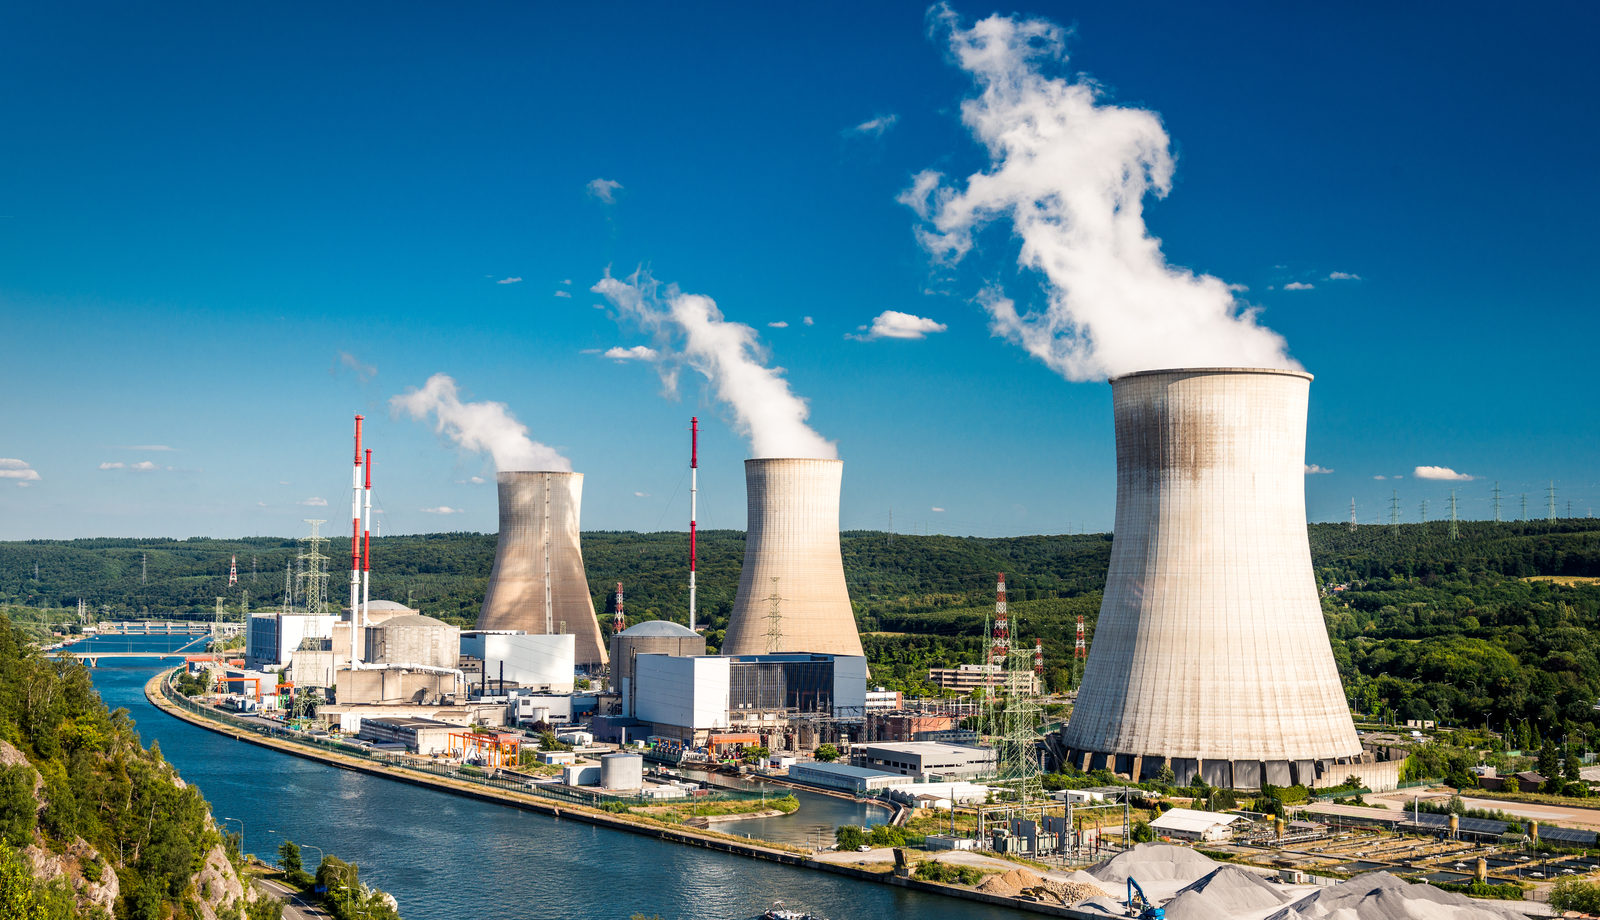 Rusya’daki nükleer yakıt üretim tesisi, 70 yıldır NGS’lerin yakıt ihtiyacını karşılıyor